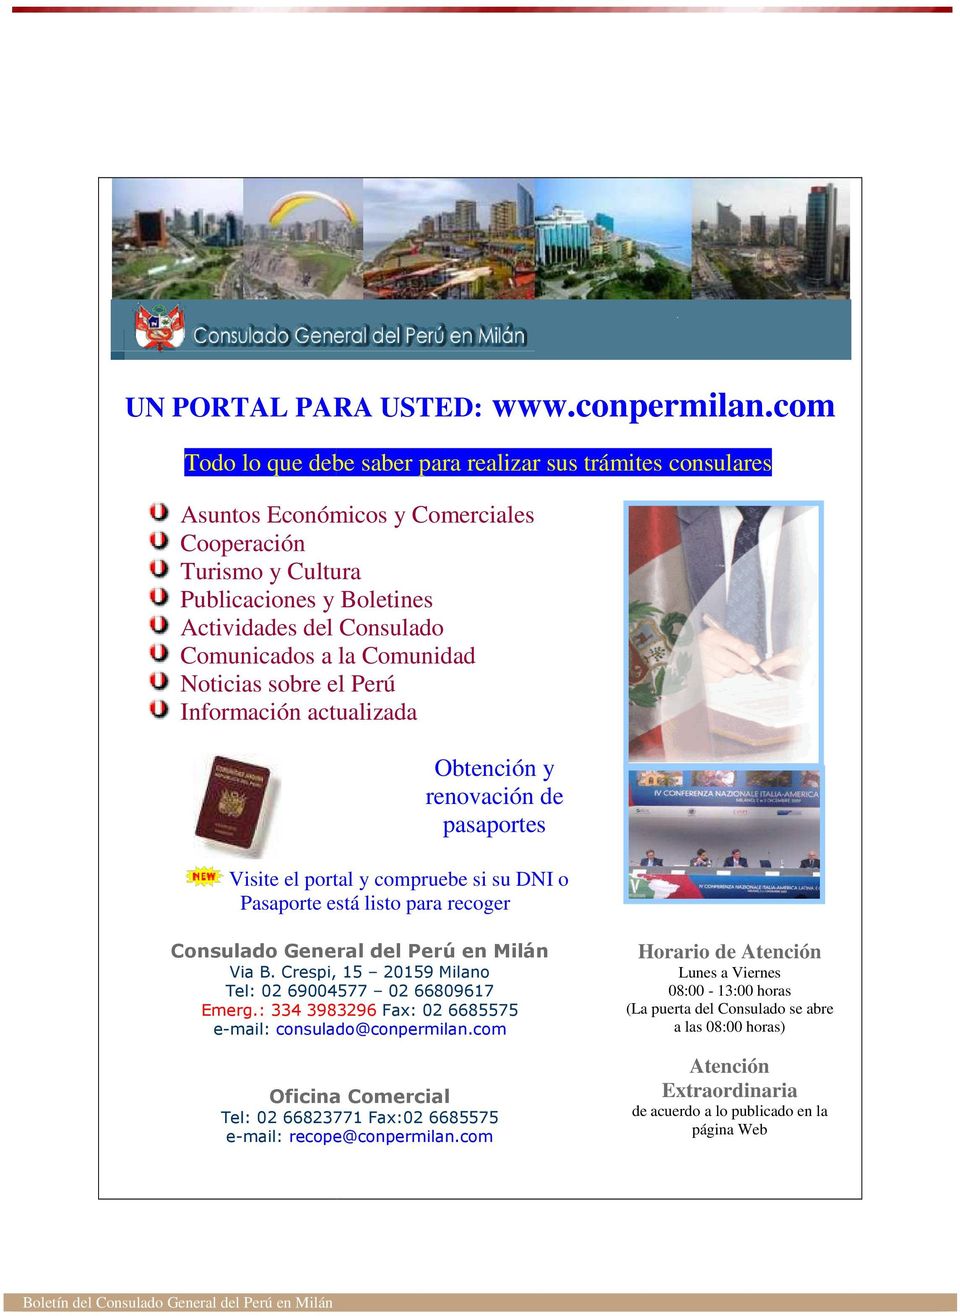 Comunidad Noticias sobre el Perú Información actualizada Obtención y renovación de pasaportes Visite el portal y compruebe si su DNI o Pasaporte está listo para recoger Consulado General del Perú en